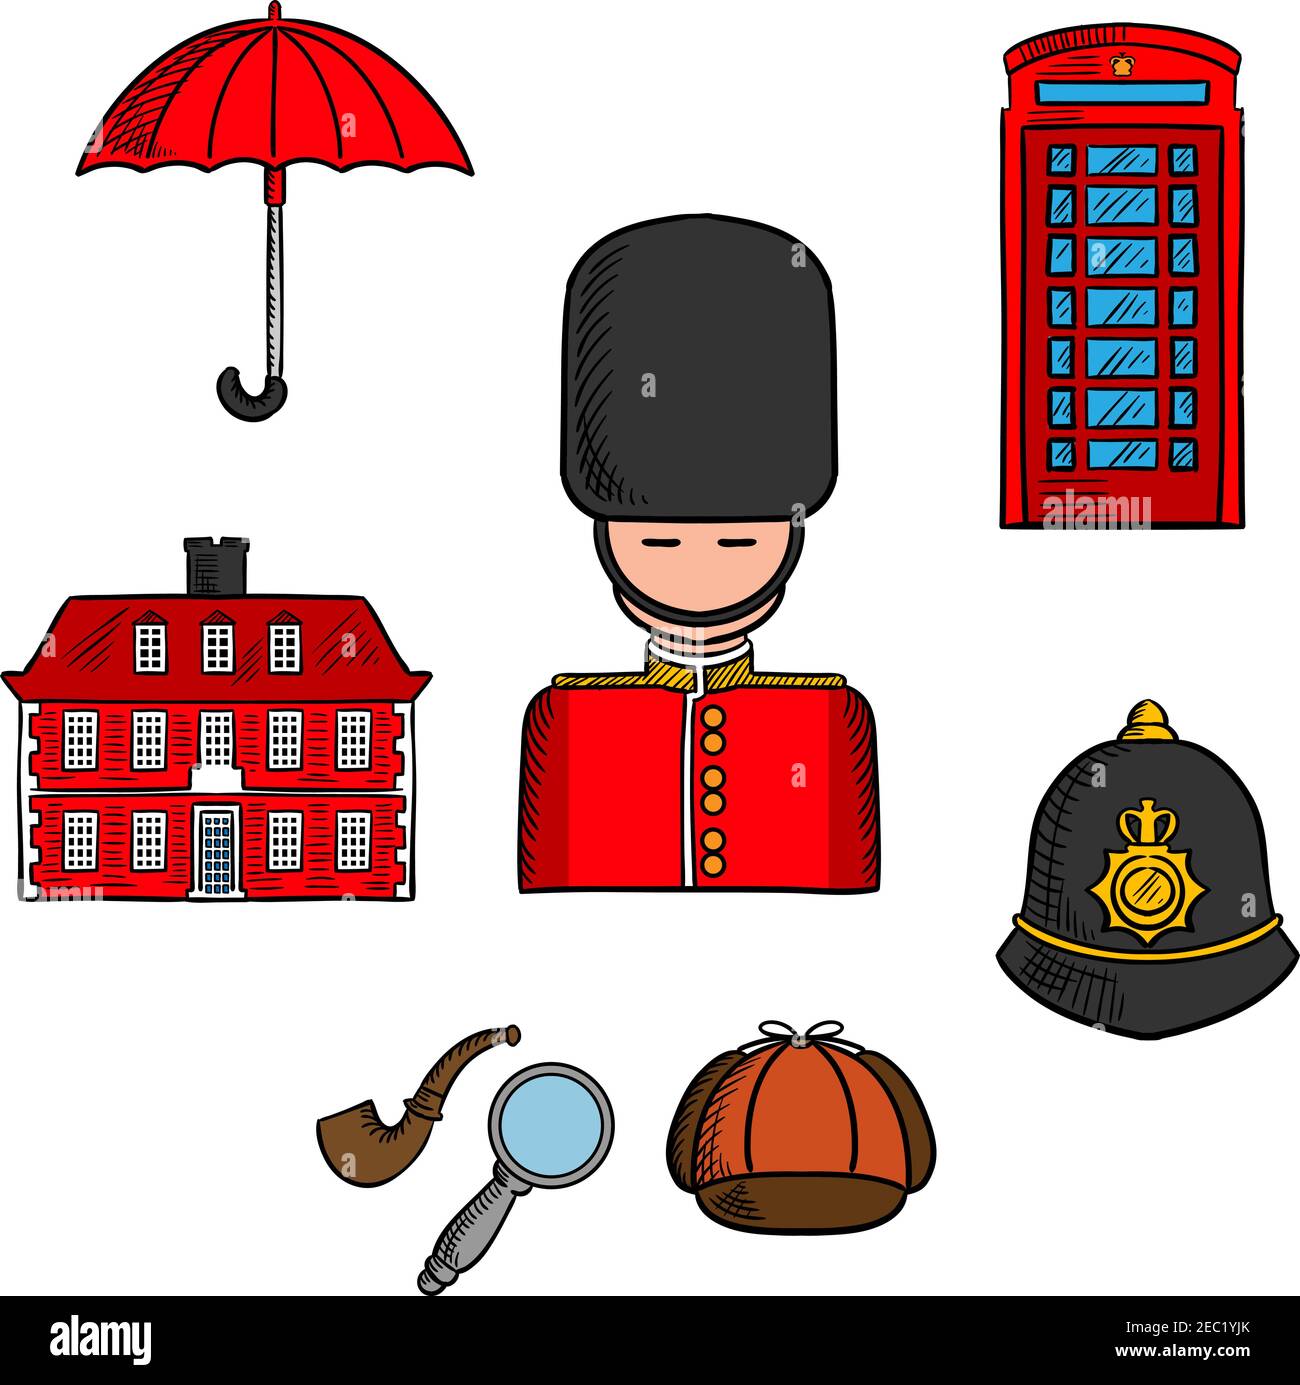 Symboles traditionnels et monuments de voyage de l'icône de Londres avec soldat de garde de reines, parapluie, cabine de téléphone rouge et maison de brique, le gardien de police hel Illustration de Vecteur